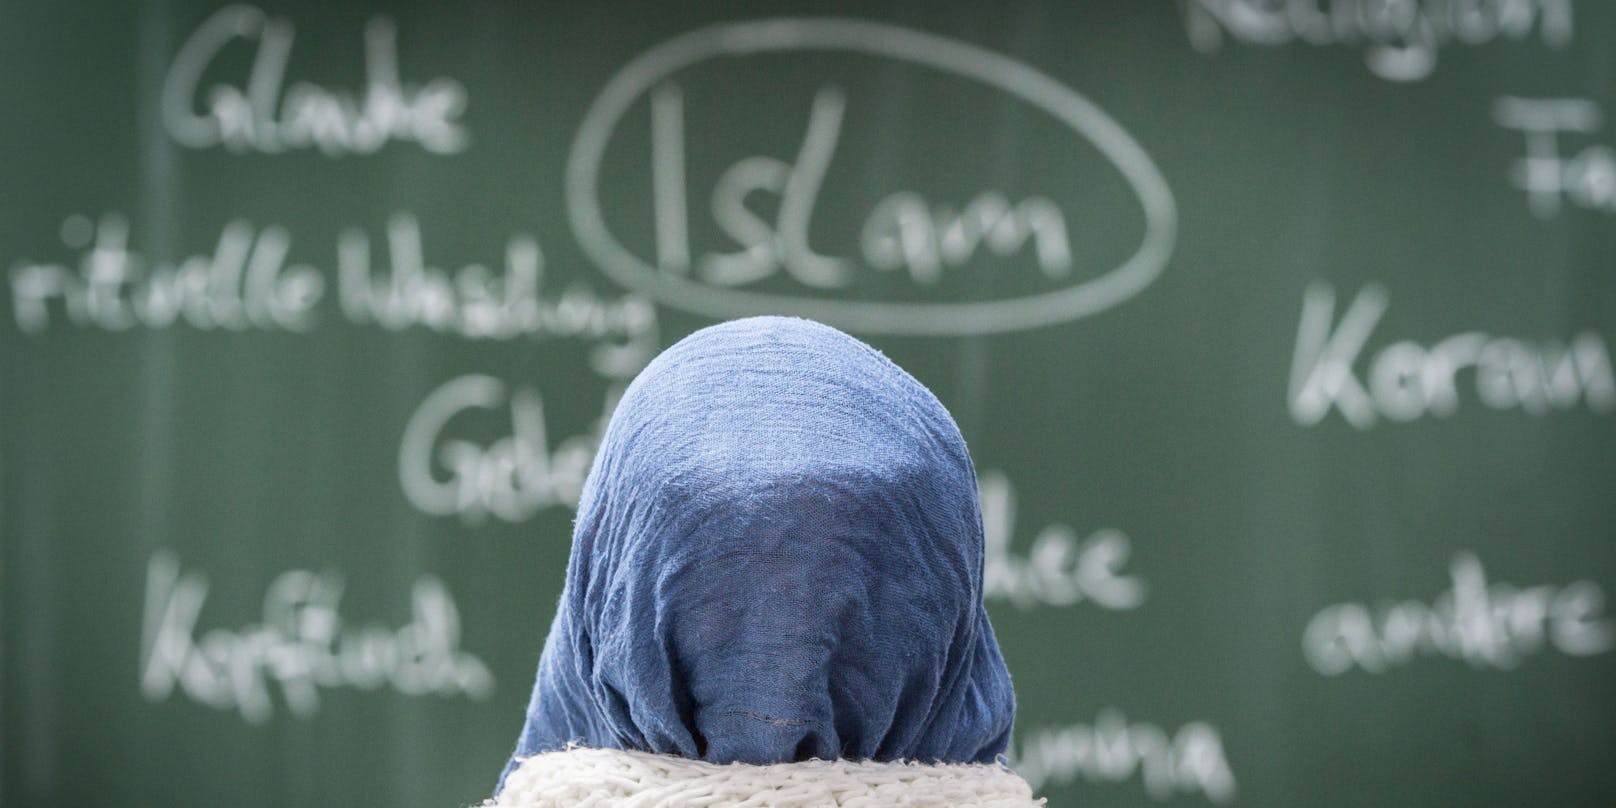 Muslimische Schülerinnen und Schüler wurden aus dem Unterricht geholt, um unter externer Aufsicht Fragen zu beantworten.